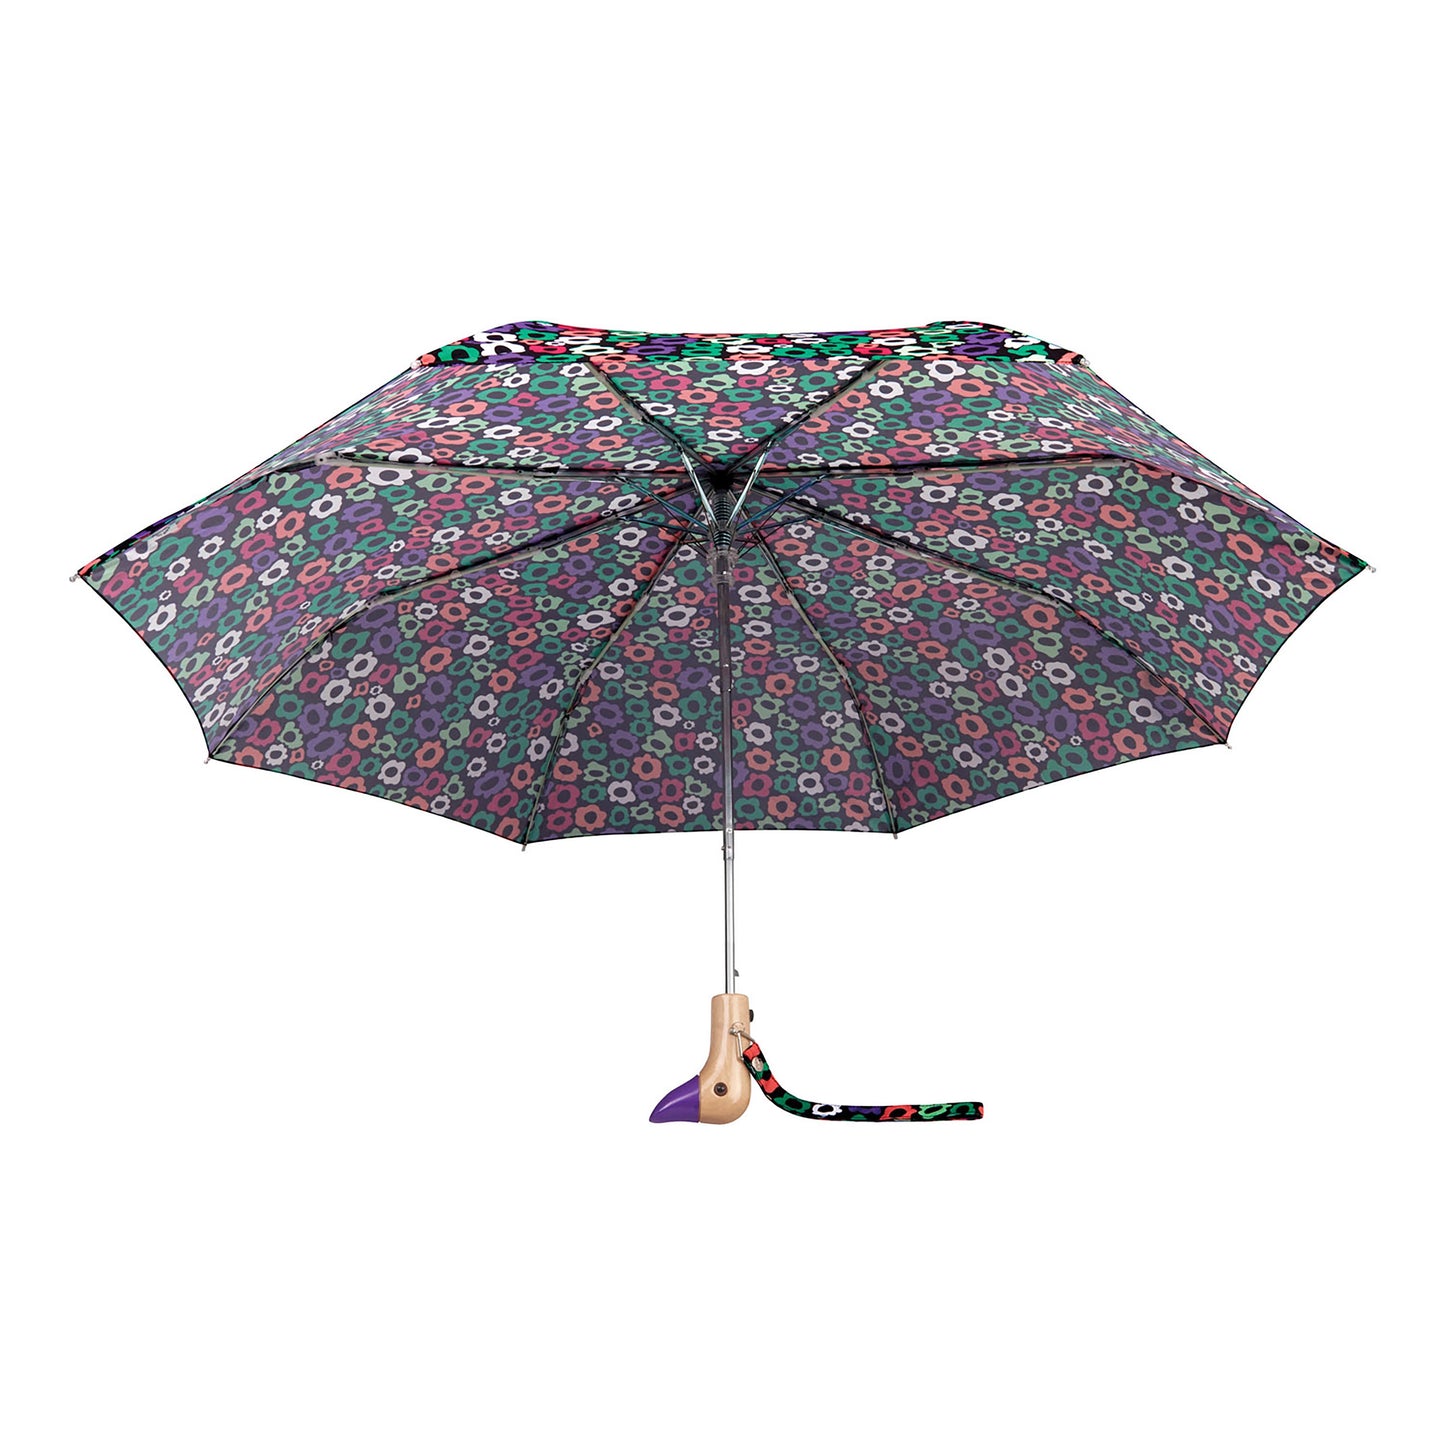 Duck Umbrella Compact - Flower Maze